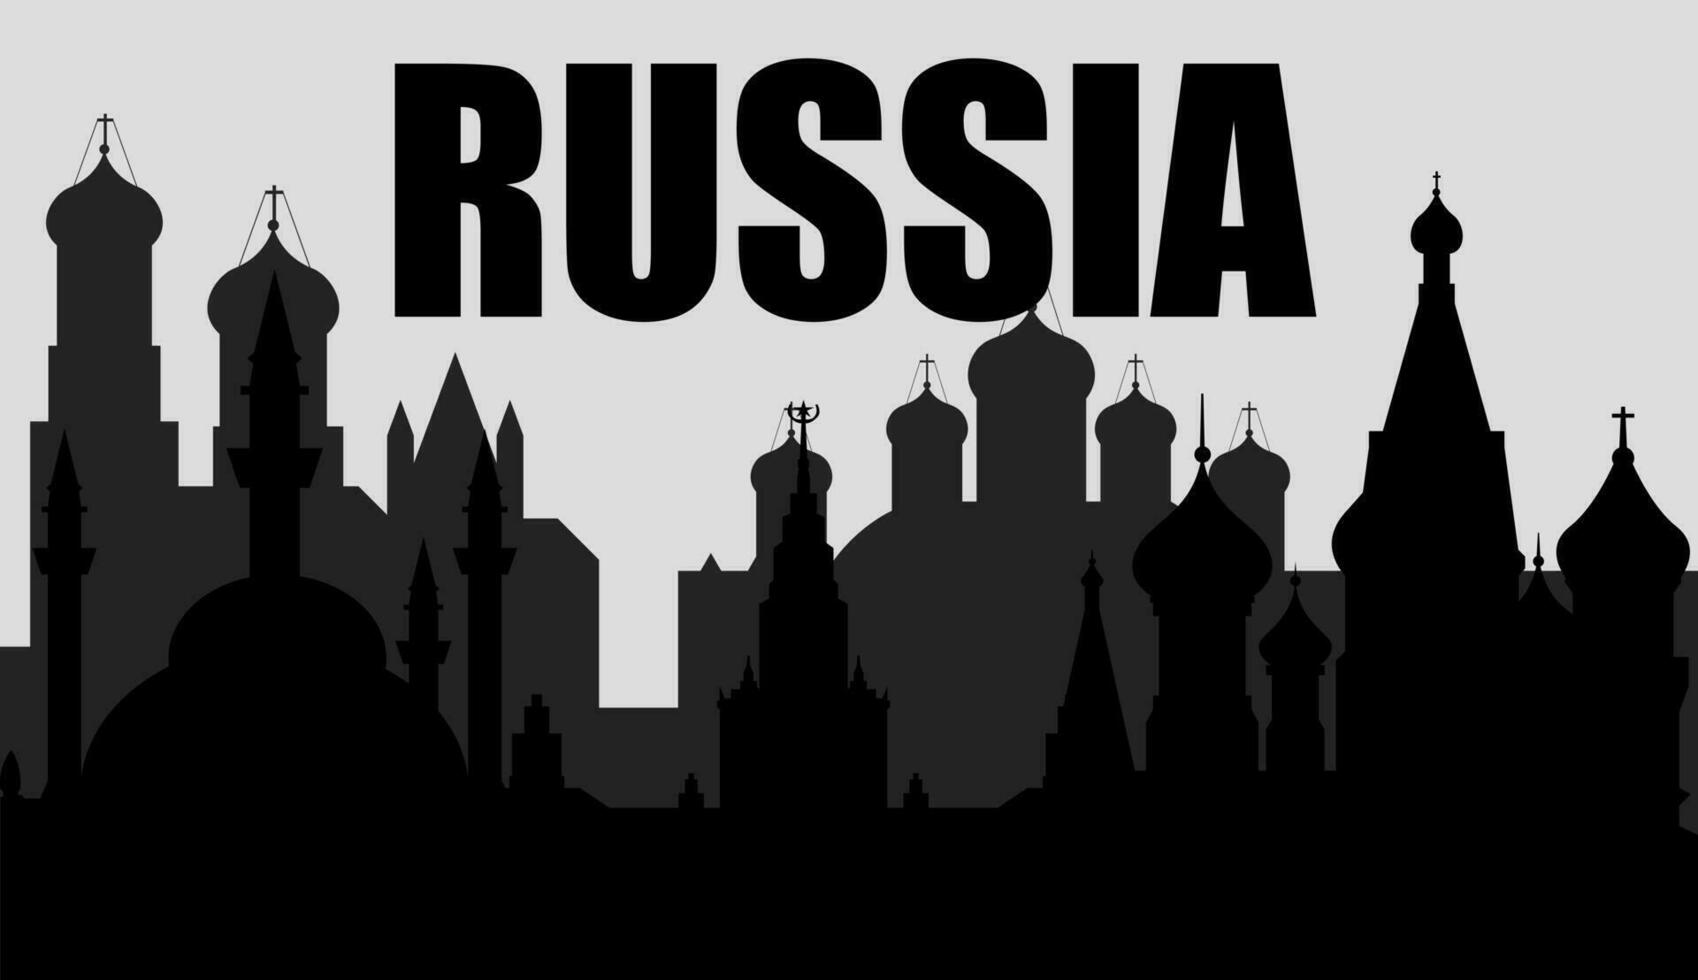 Russisch mijlpaal silhouet, vector illustratie